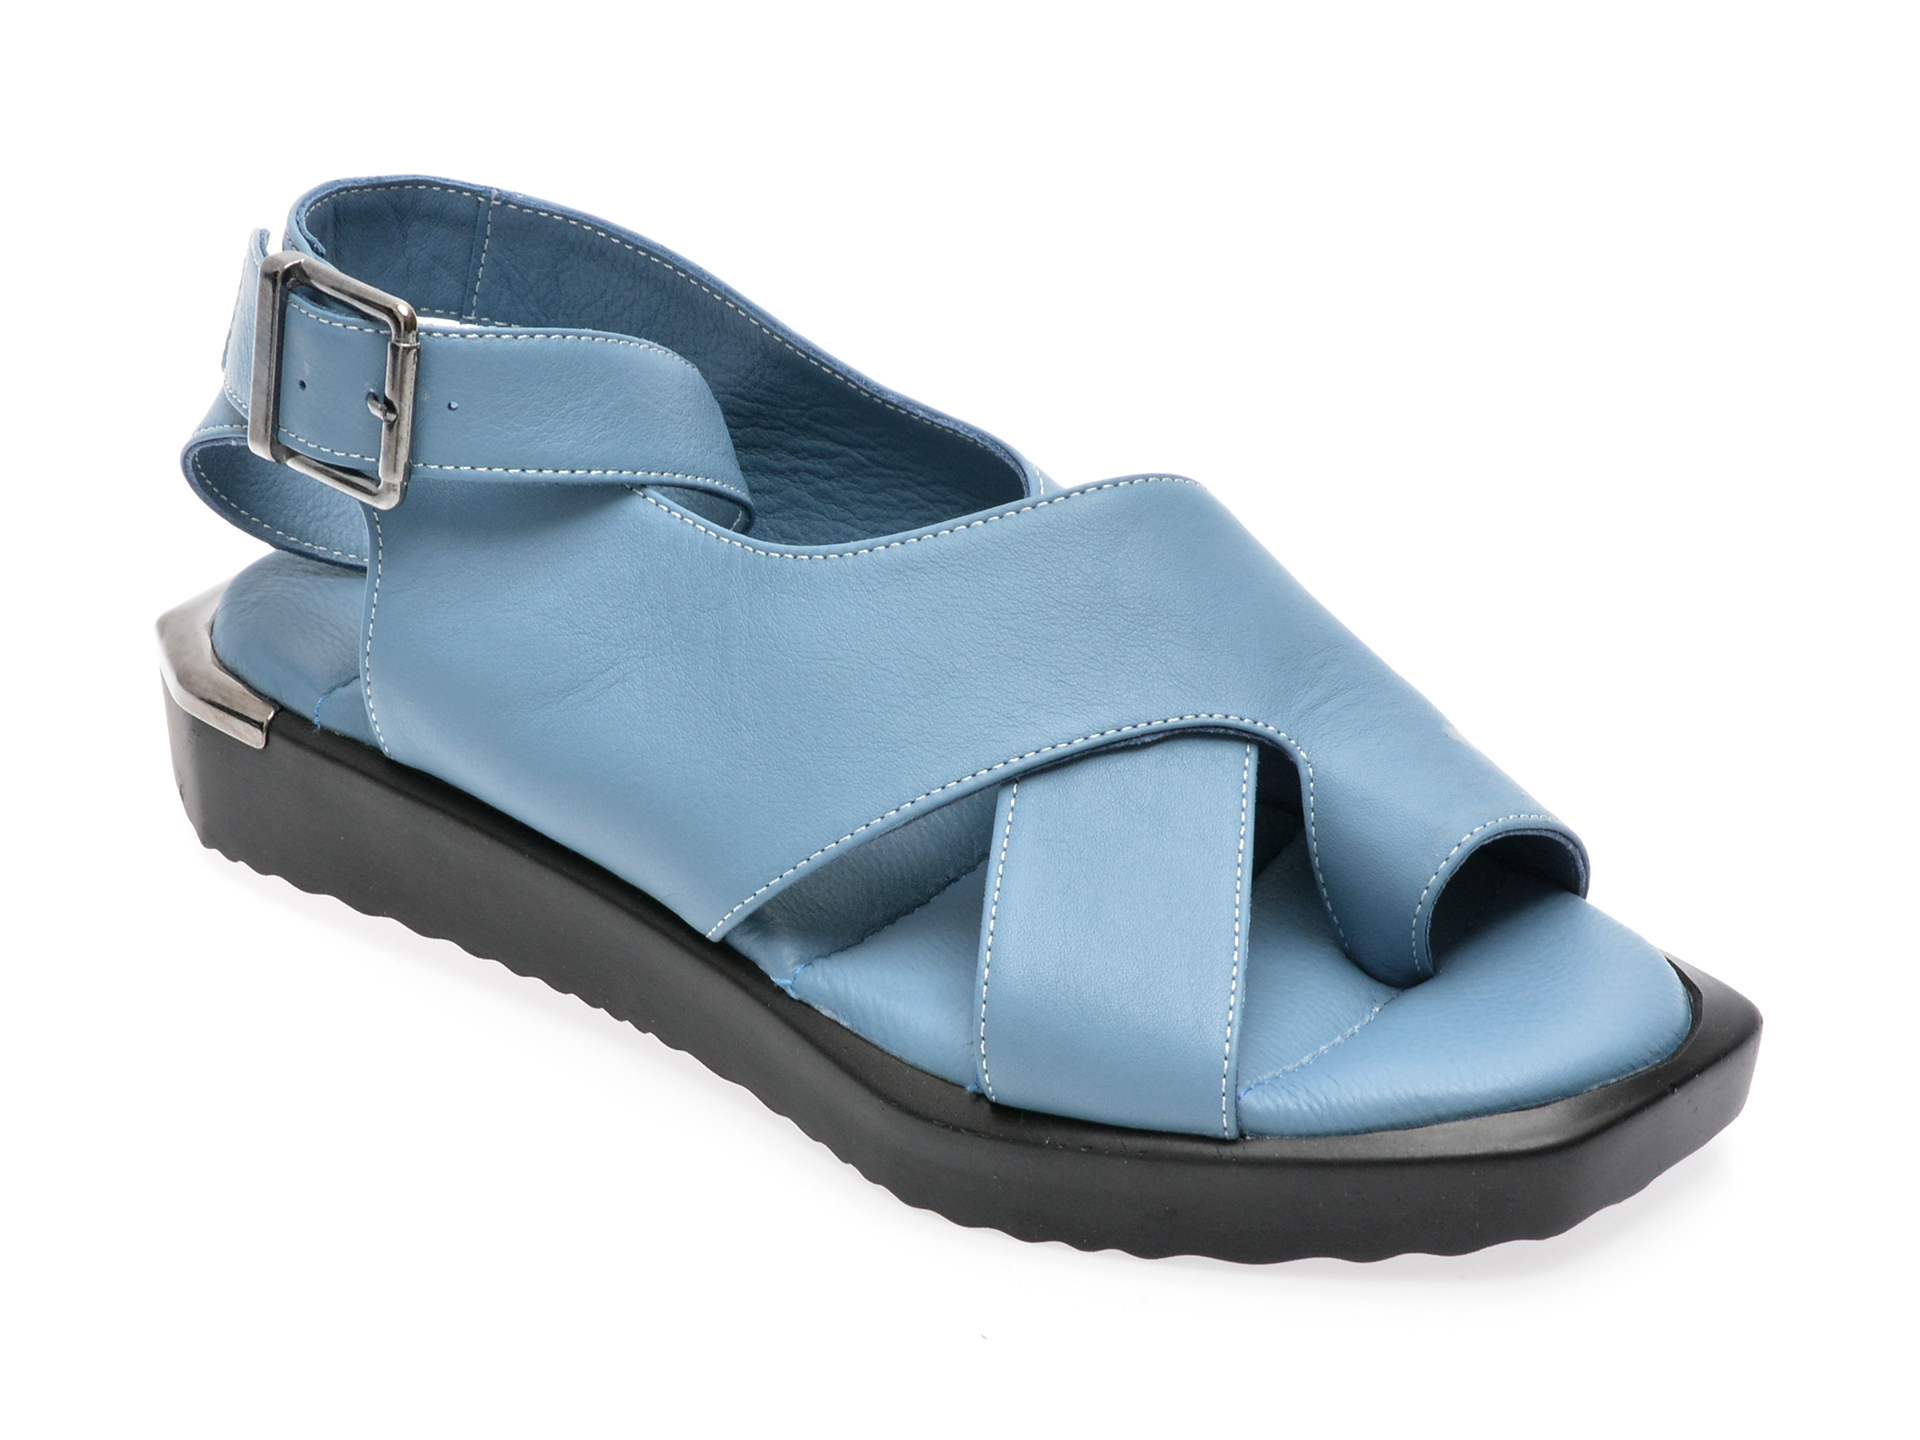 Sandale EMANI albastre, 340, din piele naturala /femei/sandale imagine noua